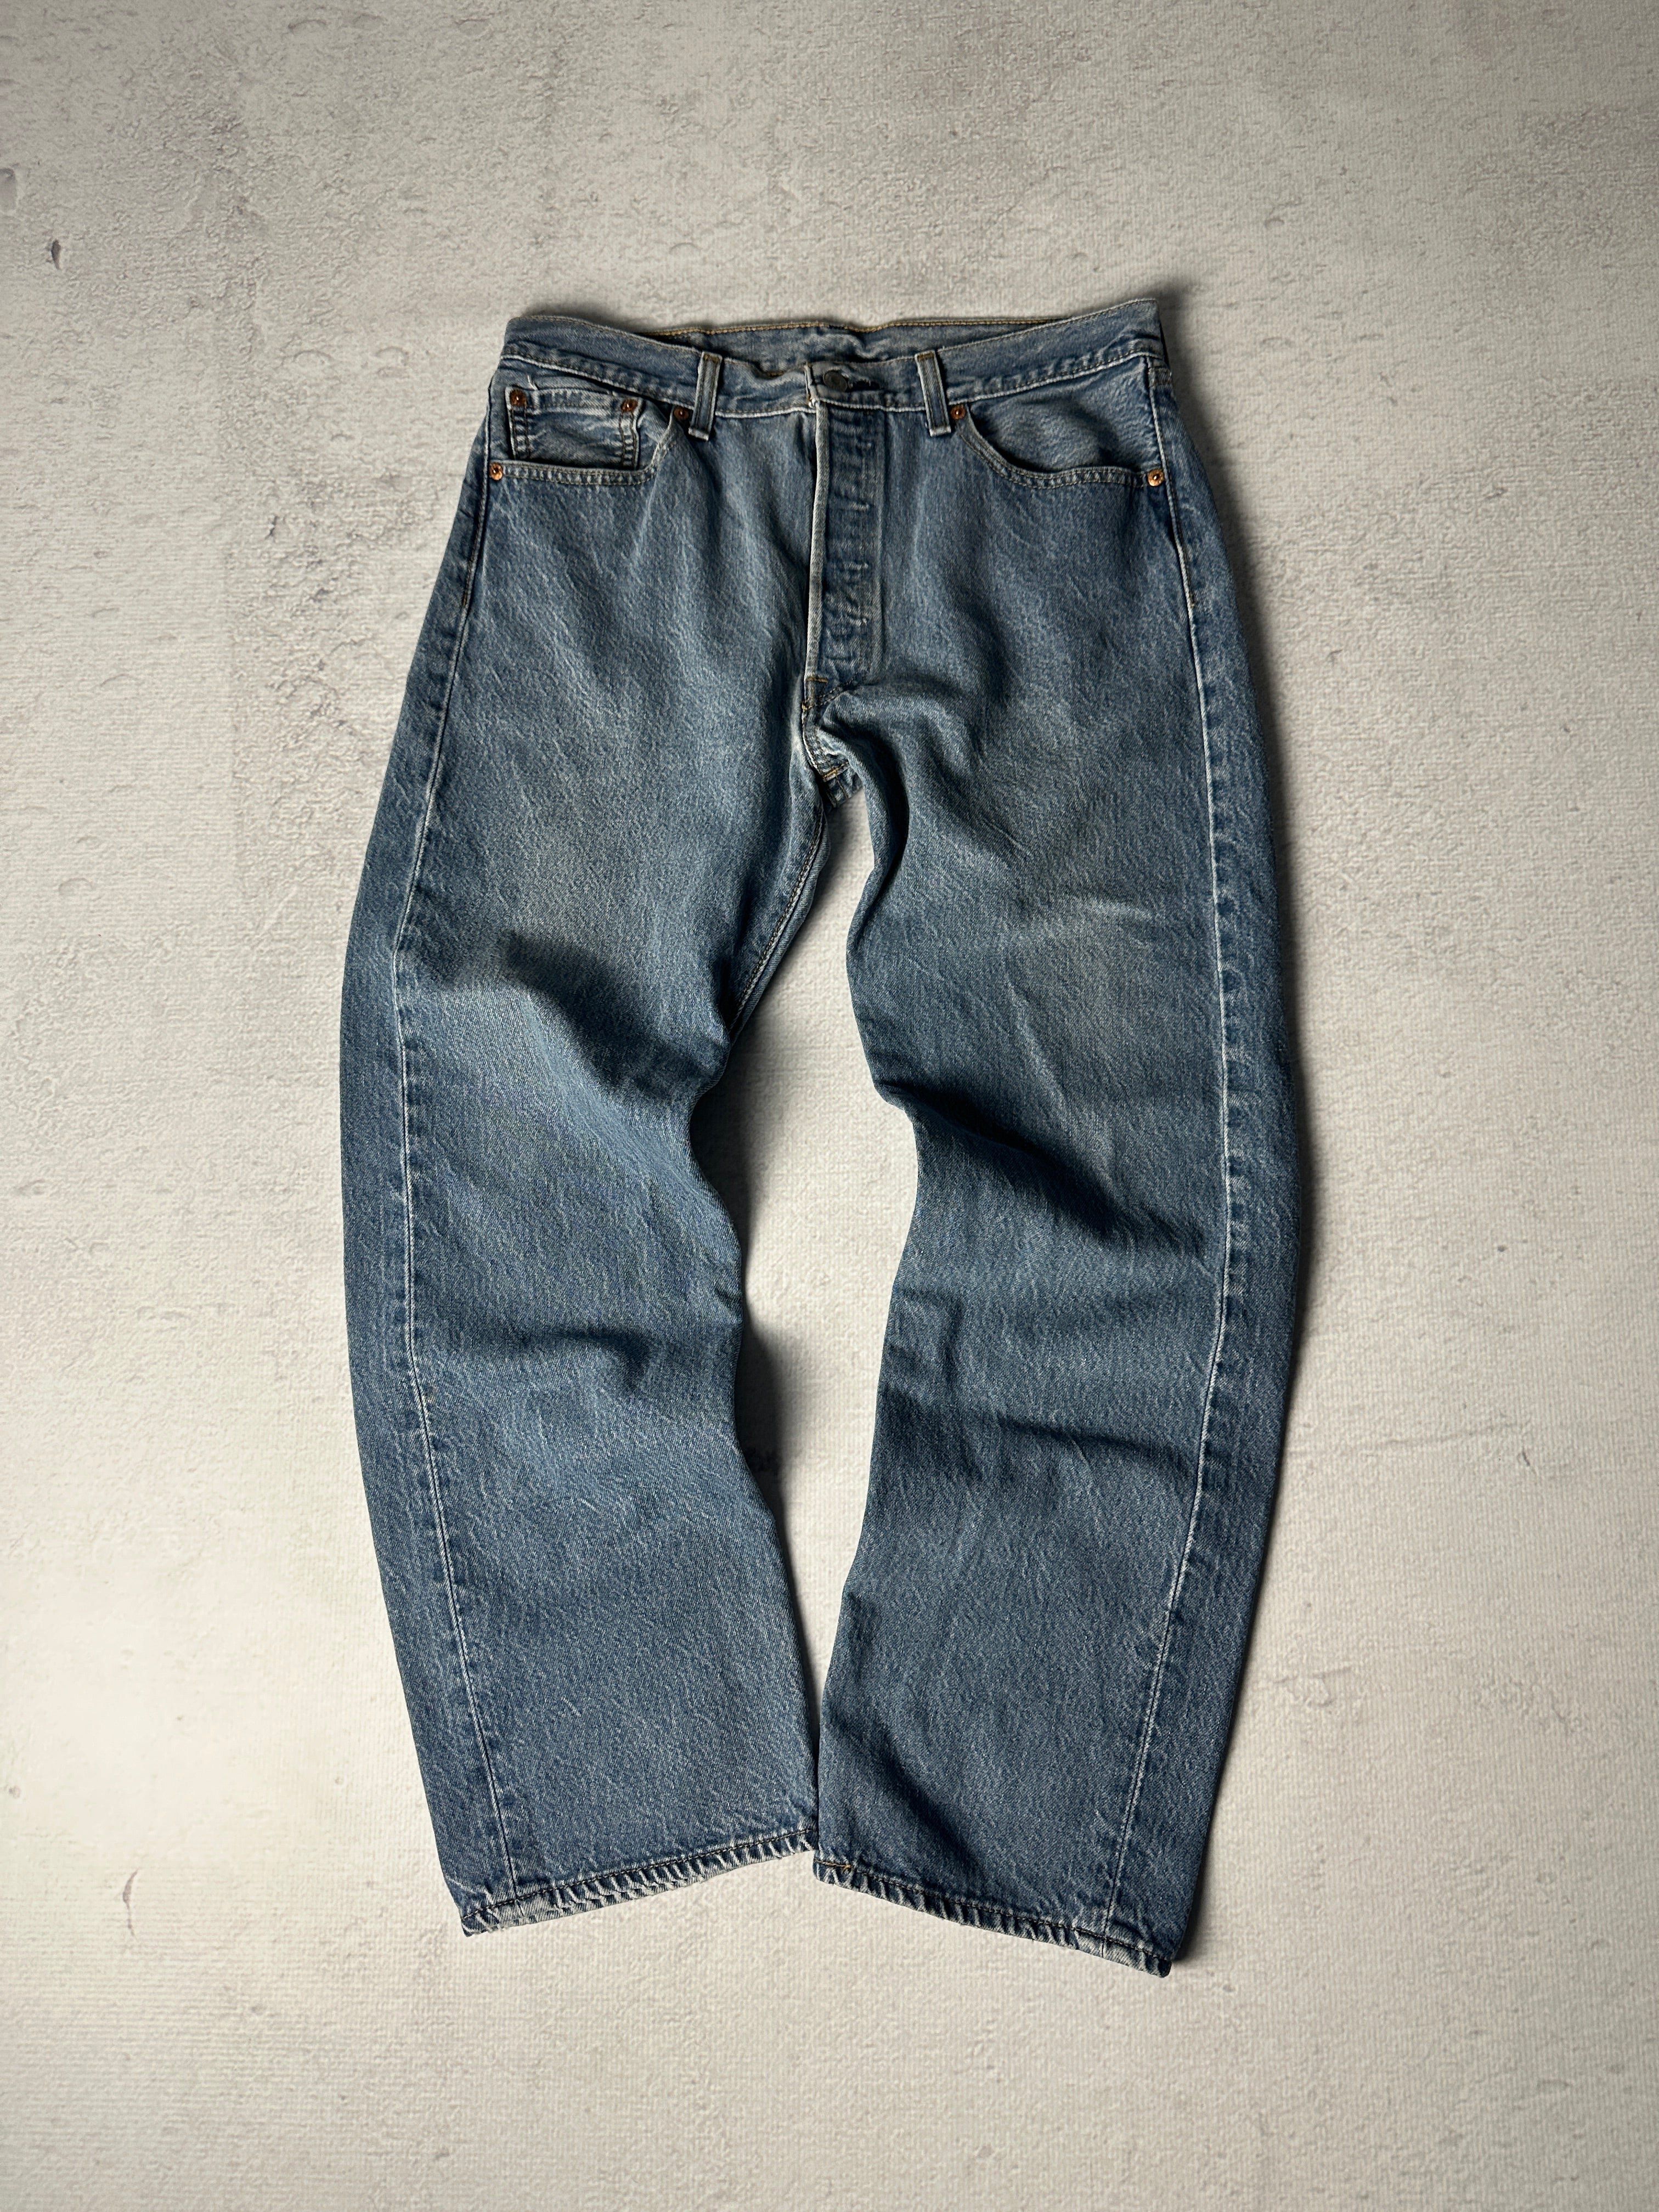 Vintage Levis 550 Jeans - Women's 29W30L